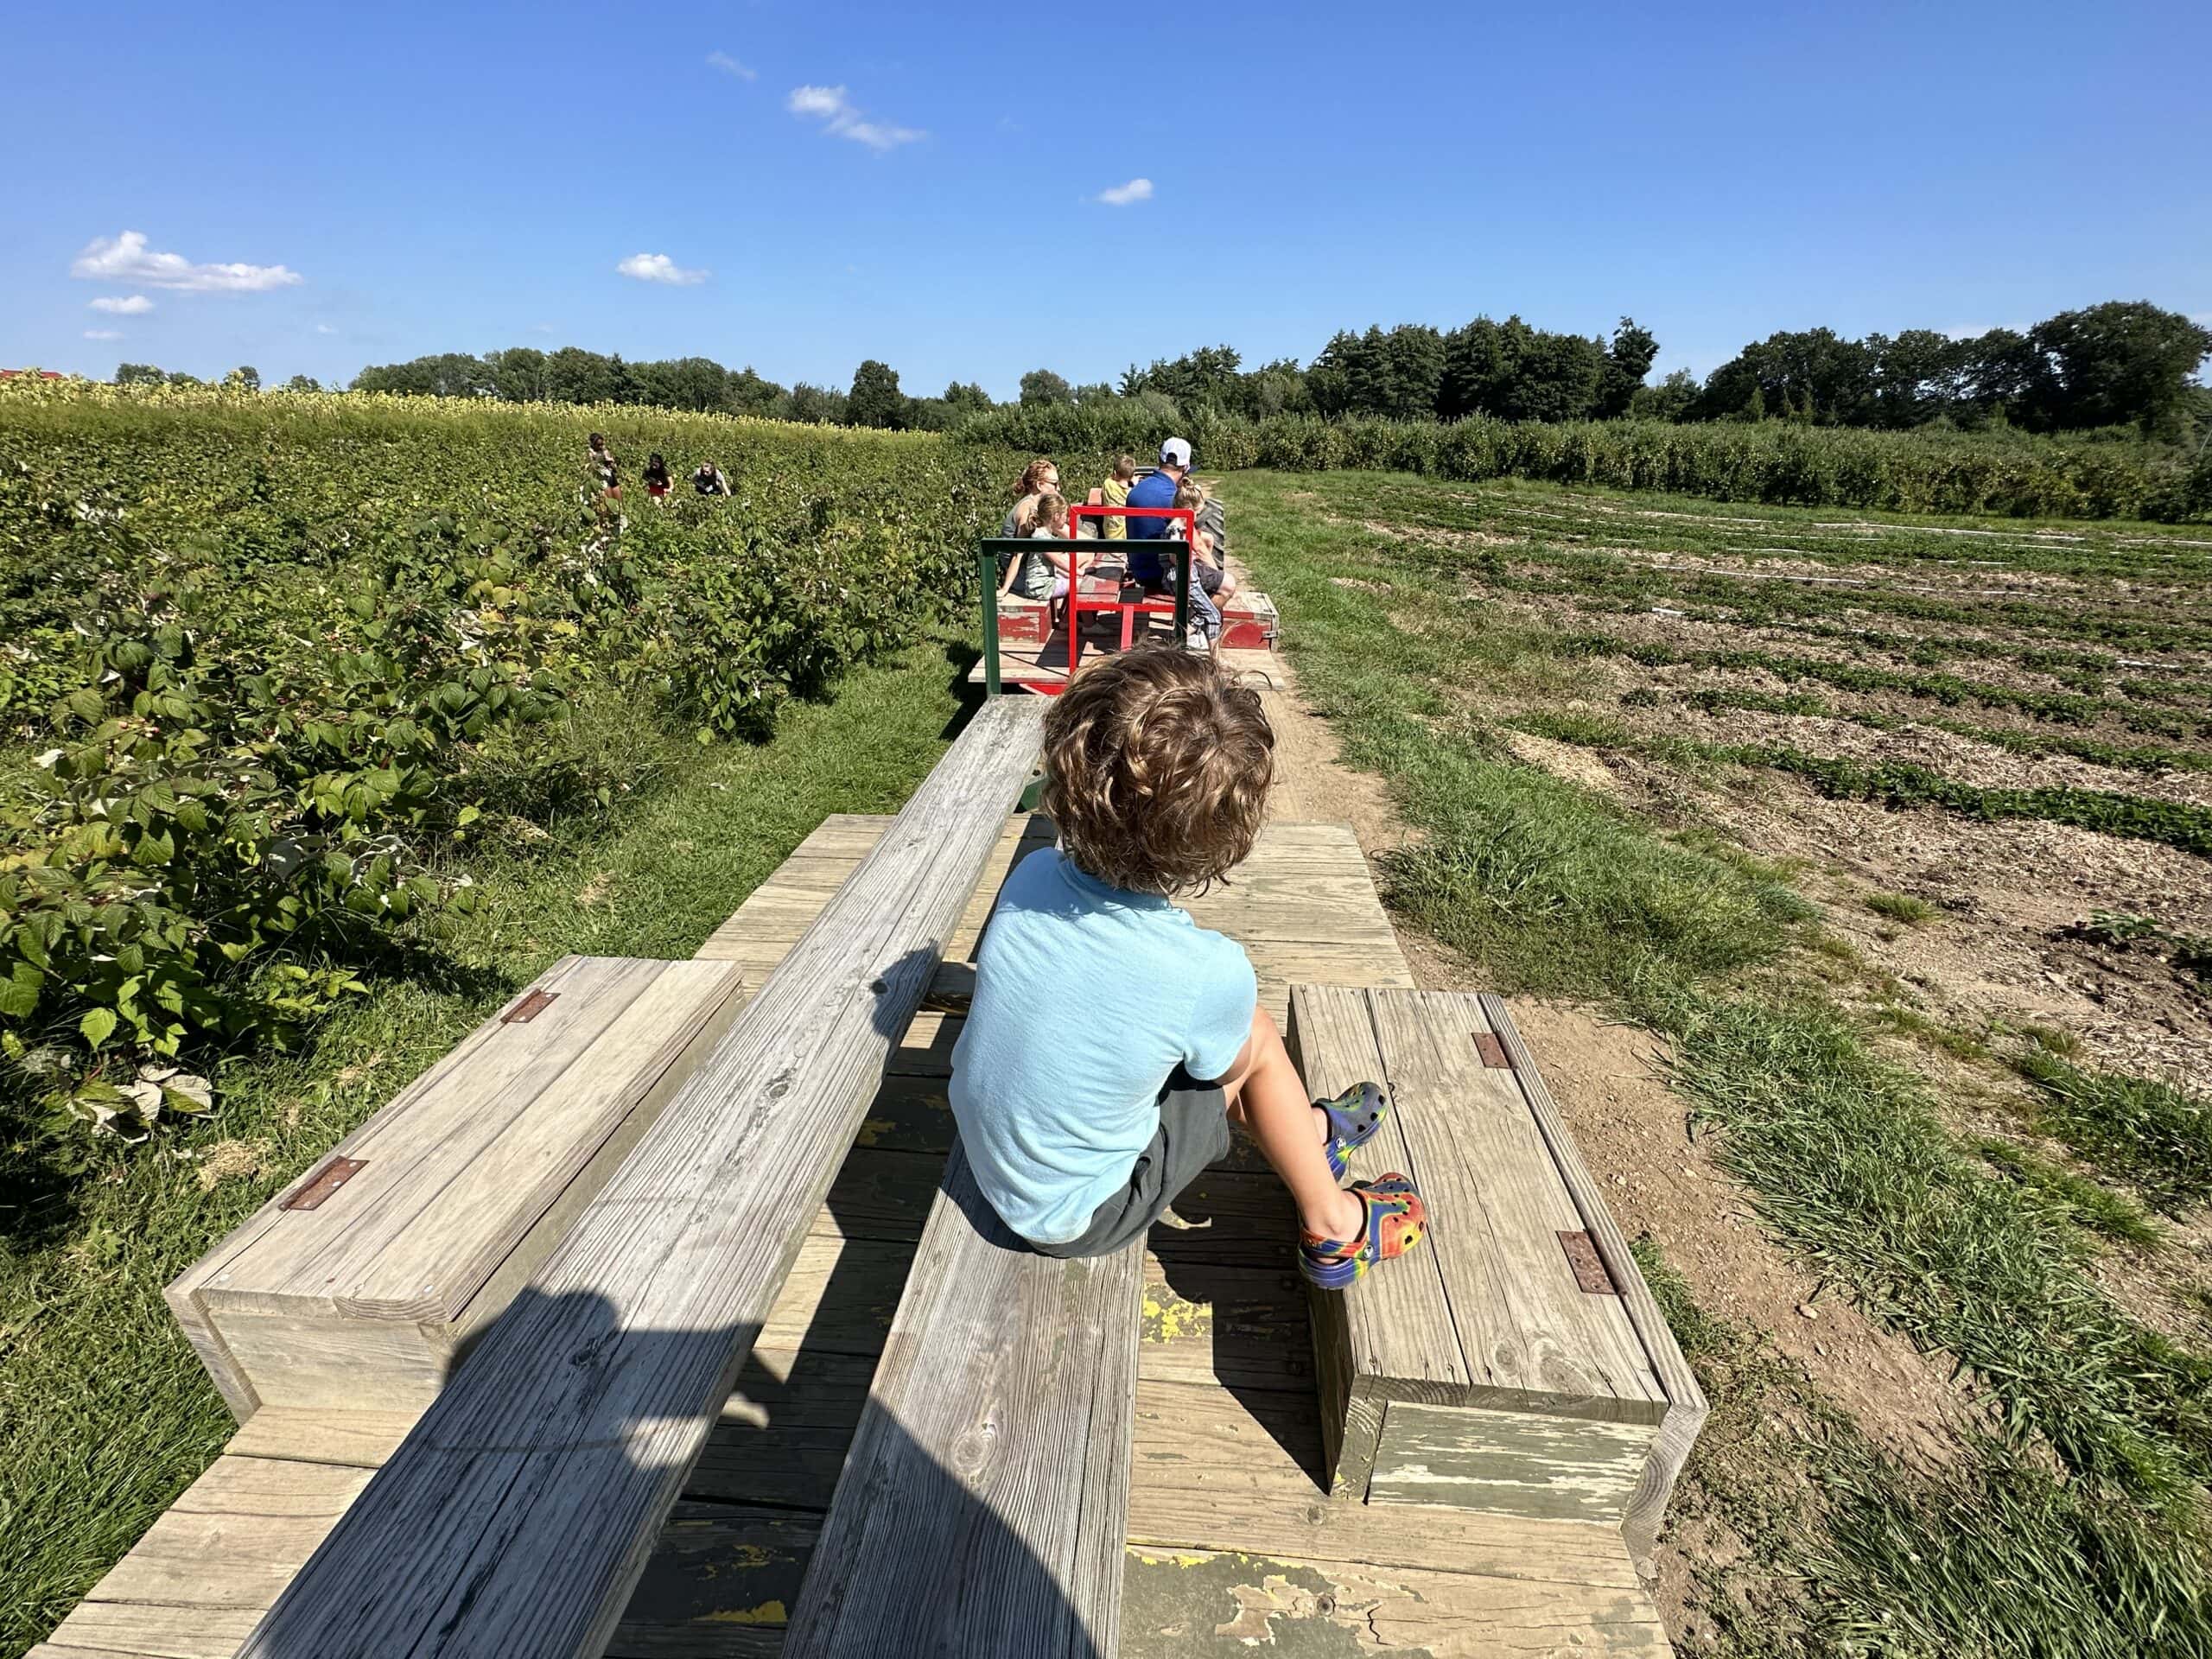 A family enjoys a wagon ride through the apple orcahrd